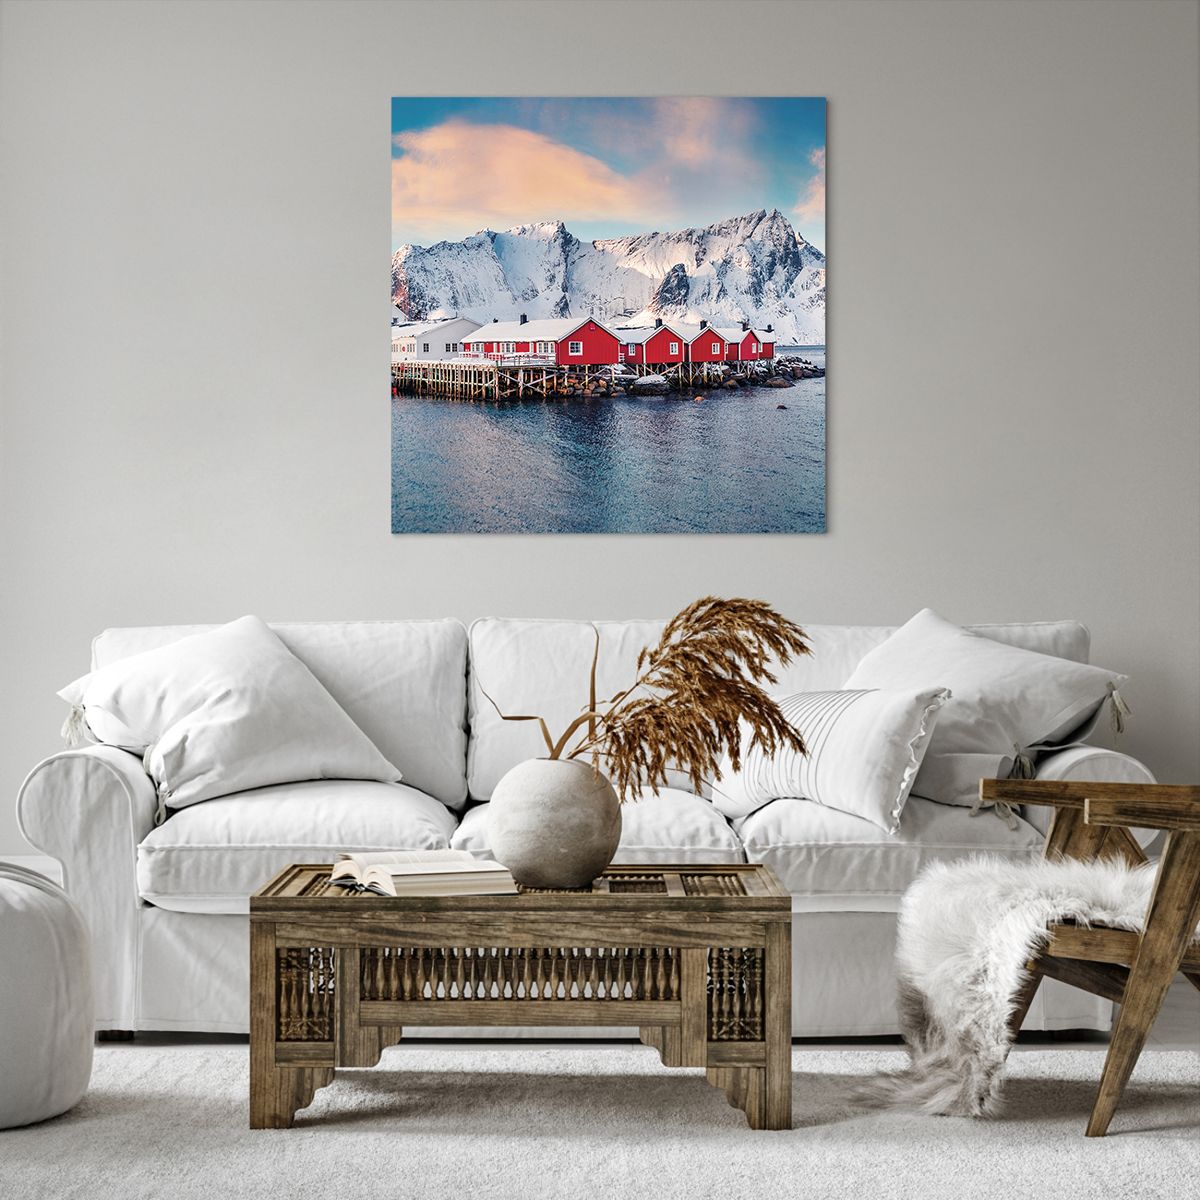 Bild auf Leinwand Landschaft, Bild auf Leinwand Norwegen, Bild auf Leinwand Lofoten, Bild auf Leinwand Boote, Bild auf Leinwand Norwegen